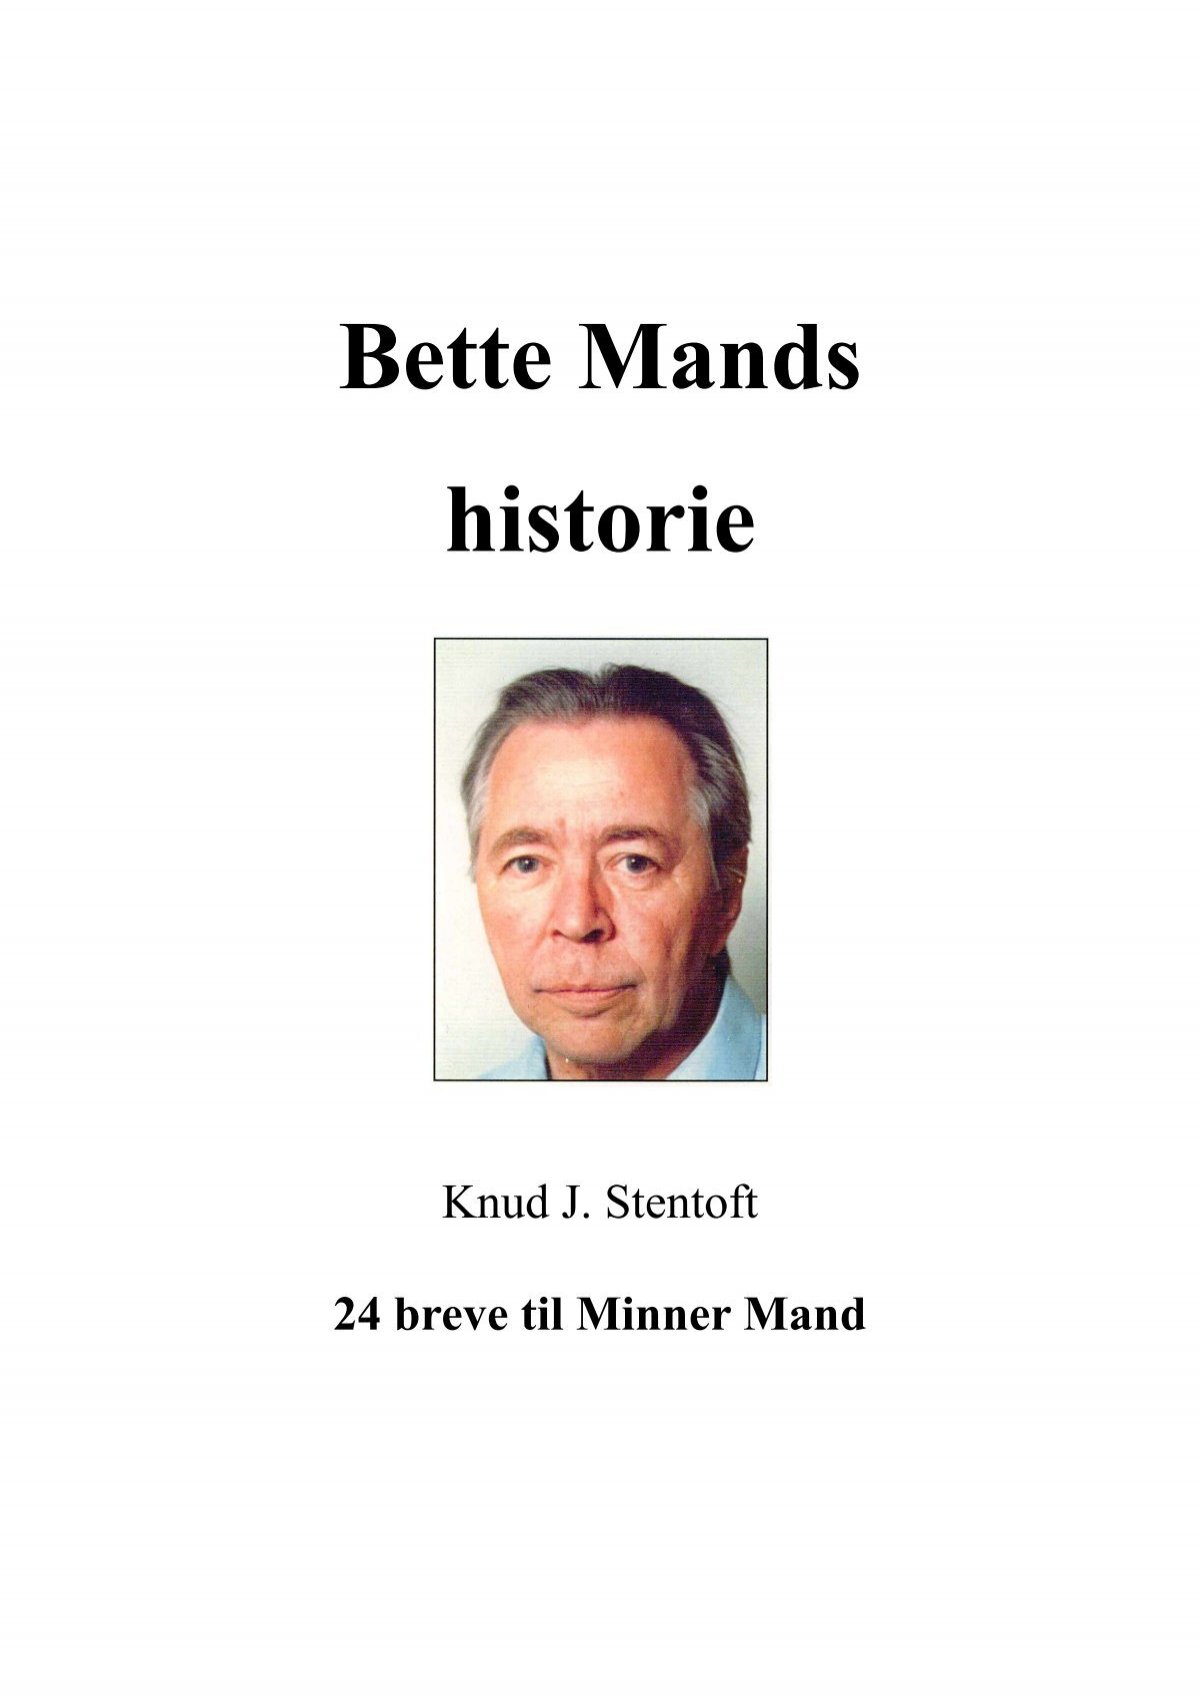 Bette Mands - Thyholm Lokalarkiv